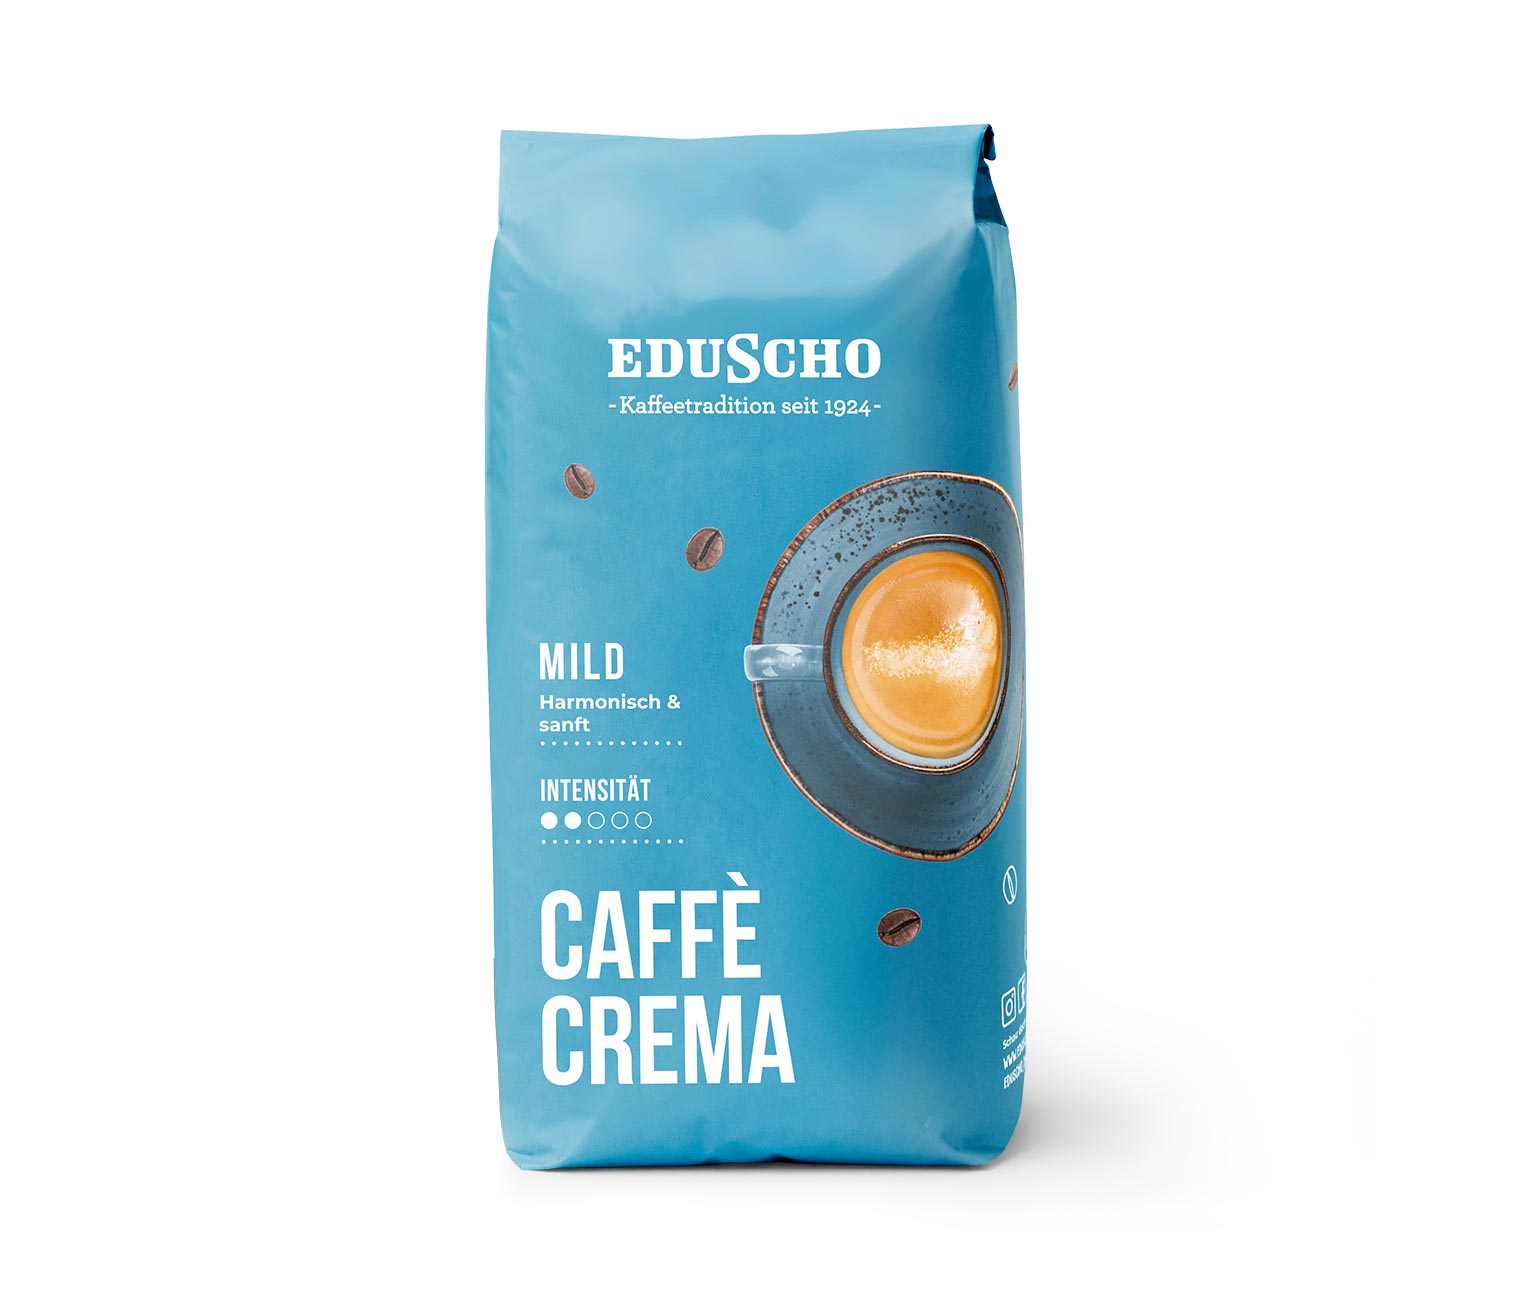 Eduscho Caffè Crema Mild - 1 kg Ganze Bohne online bestellen bei Tchibo  522684